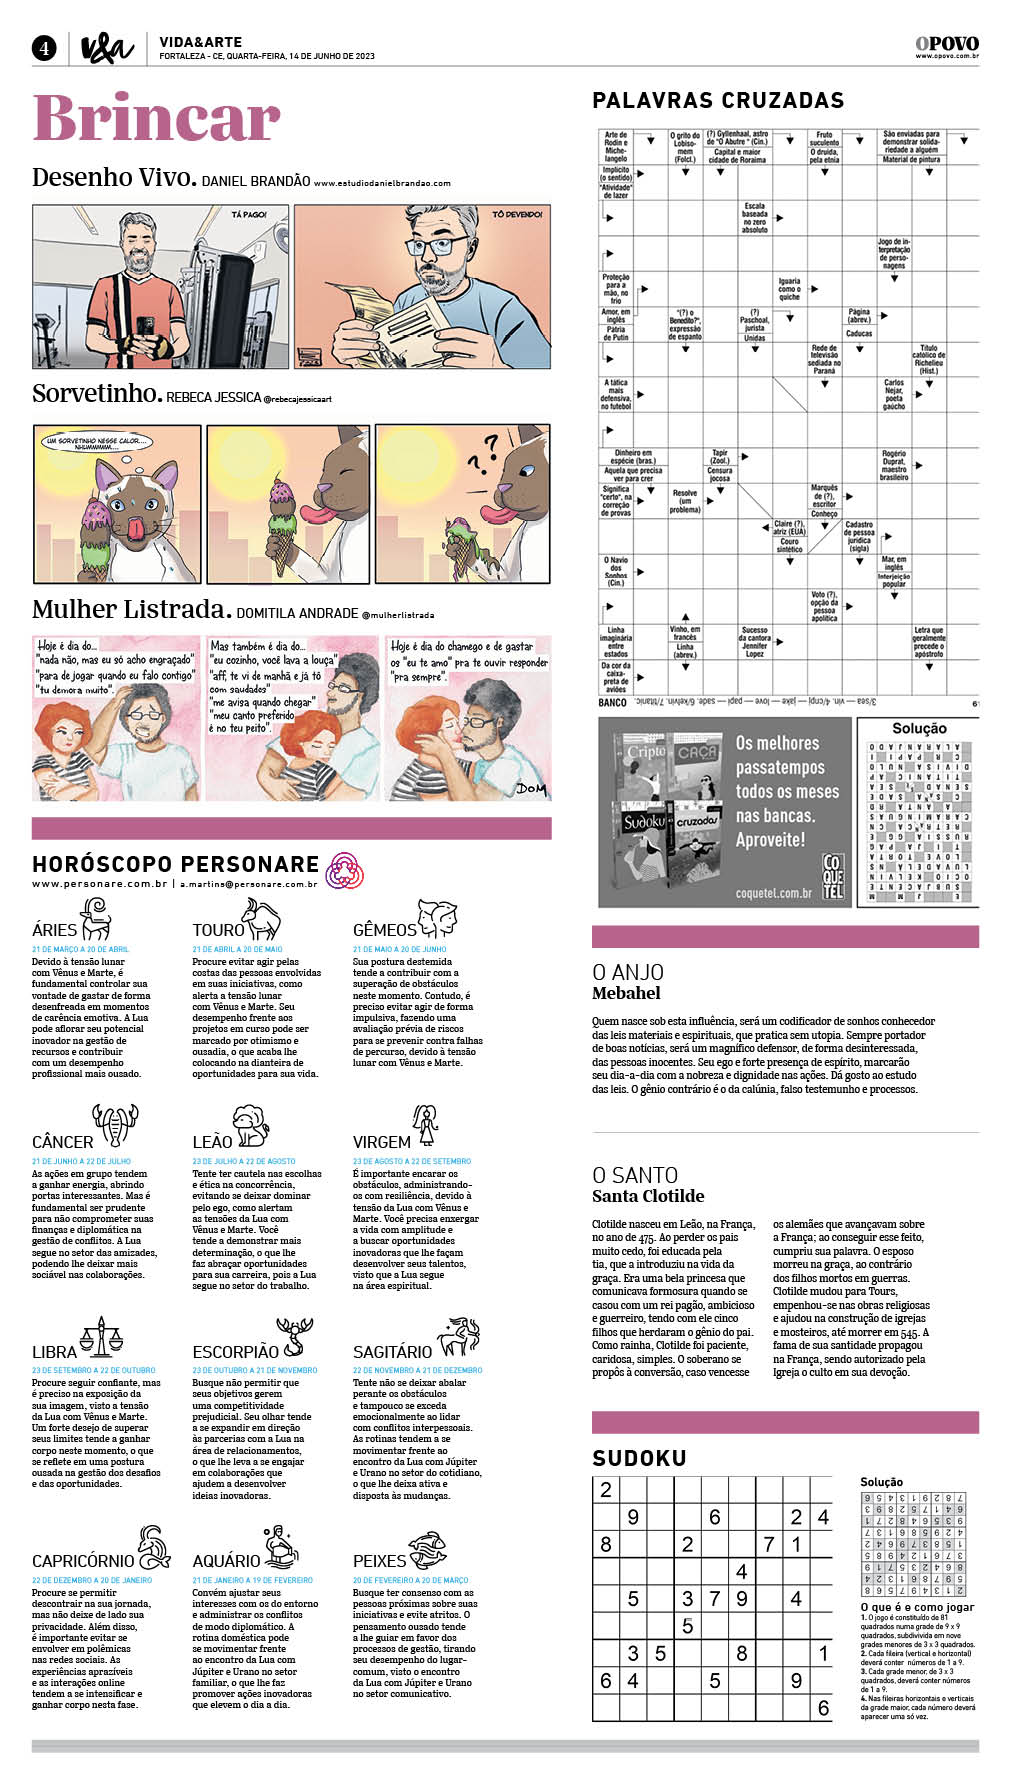 Sudoku Letras e Números 27 Jogos Edição 01 - Edi Case - Editora